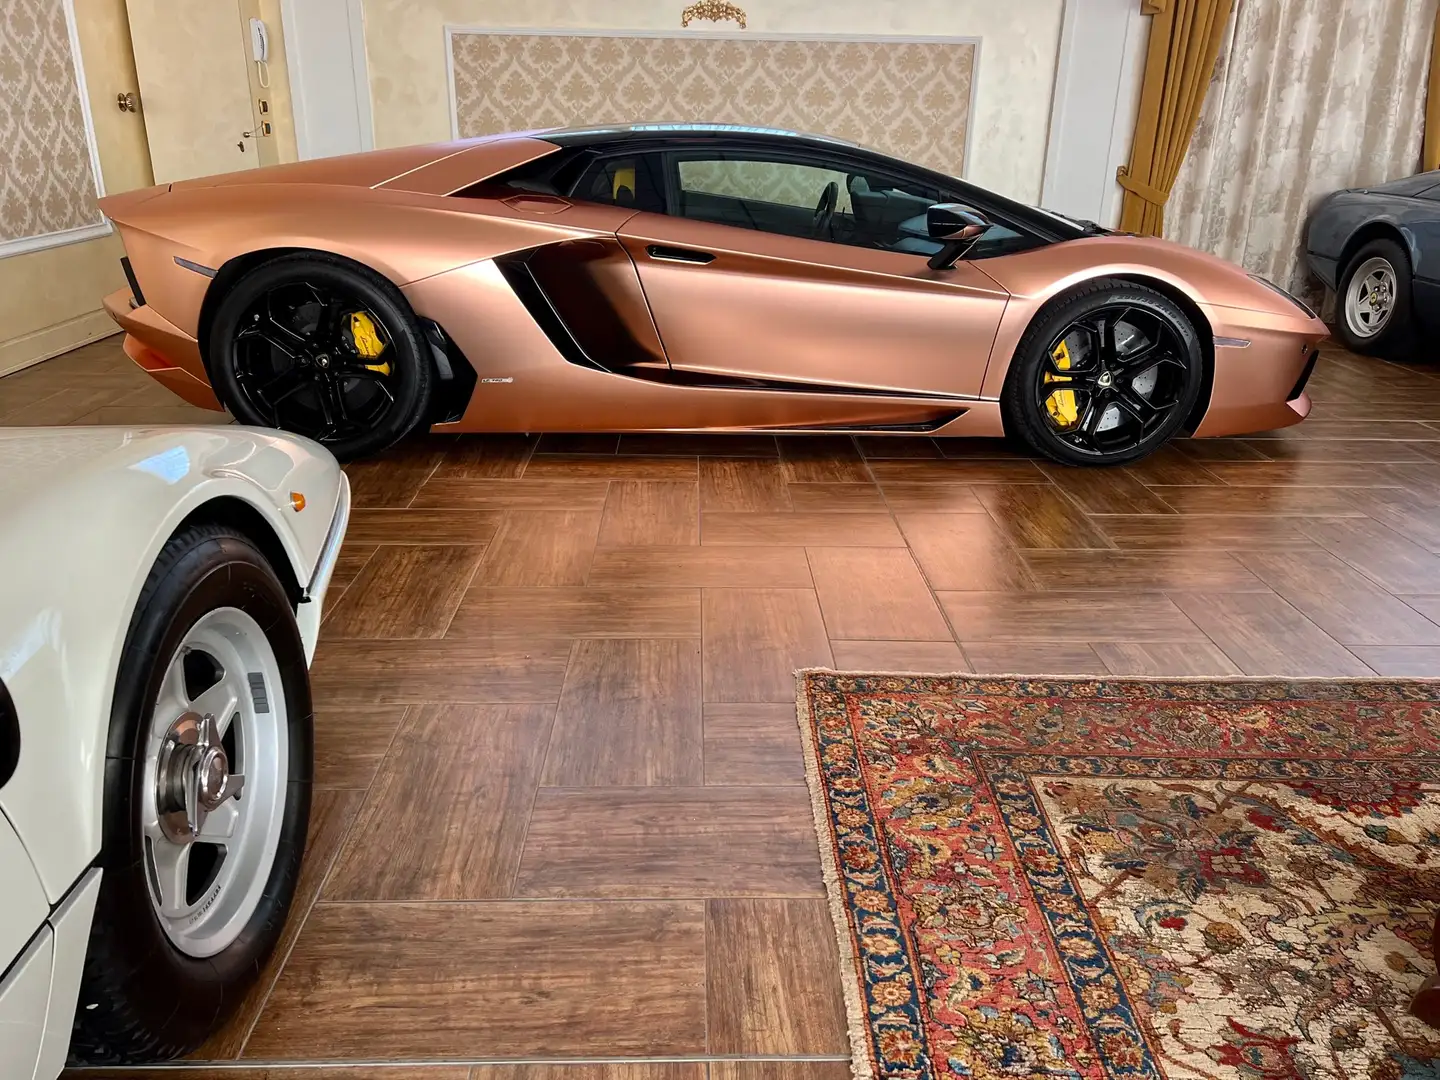 usato Lamborghini Aventador Coupé a Belvedere di Tezze sul Brenta - Vicenza  - Vi per € 299.500,-